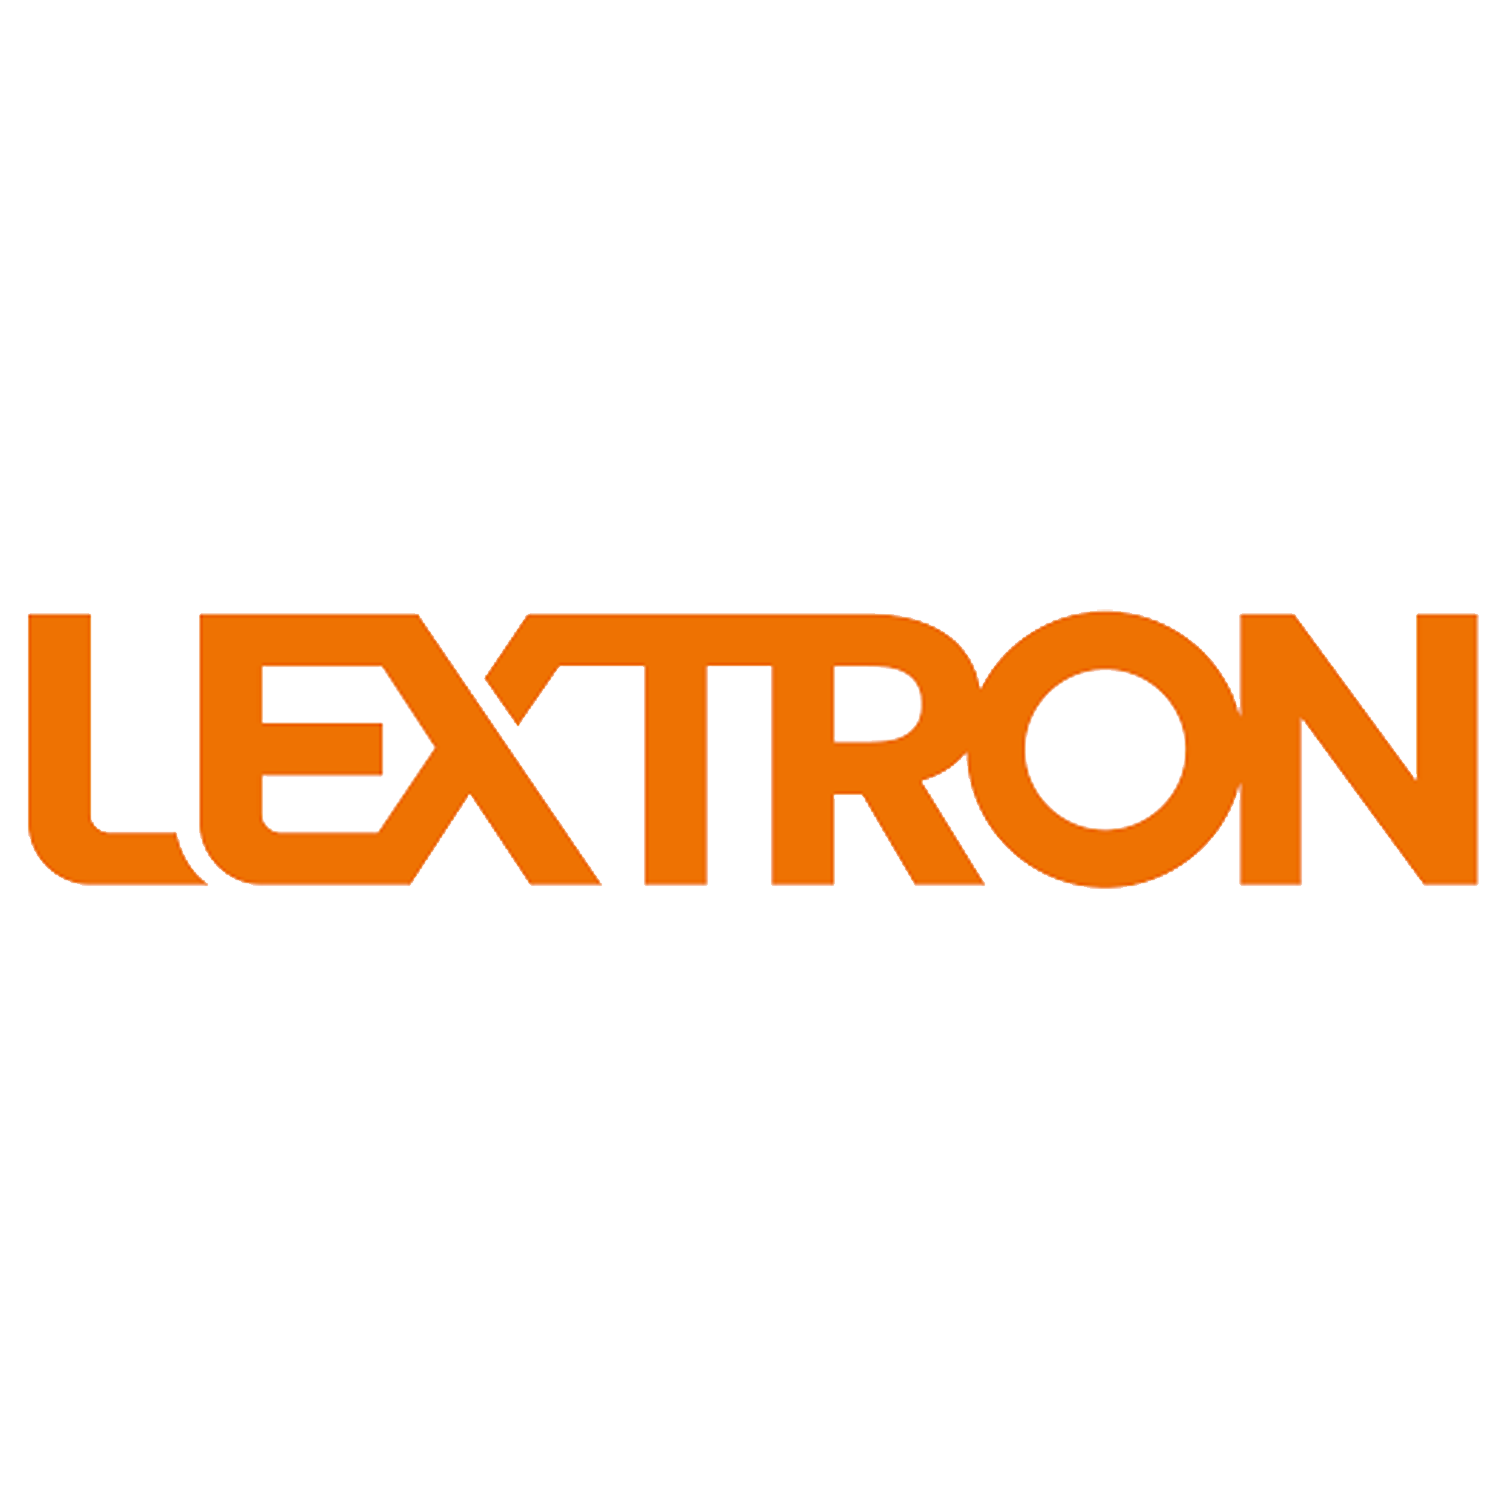 Lextron